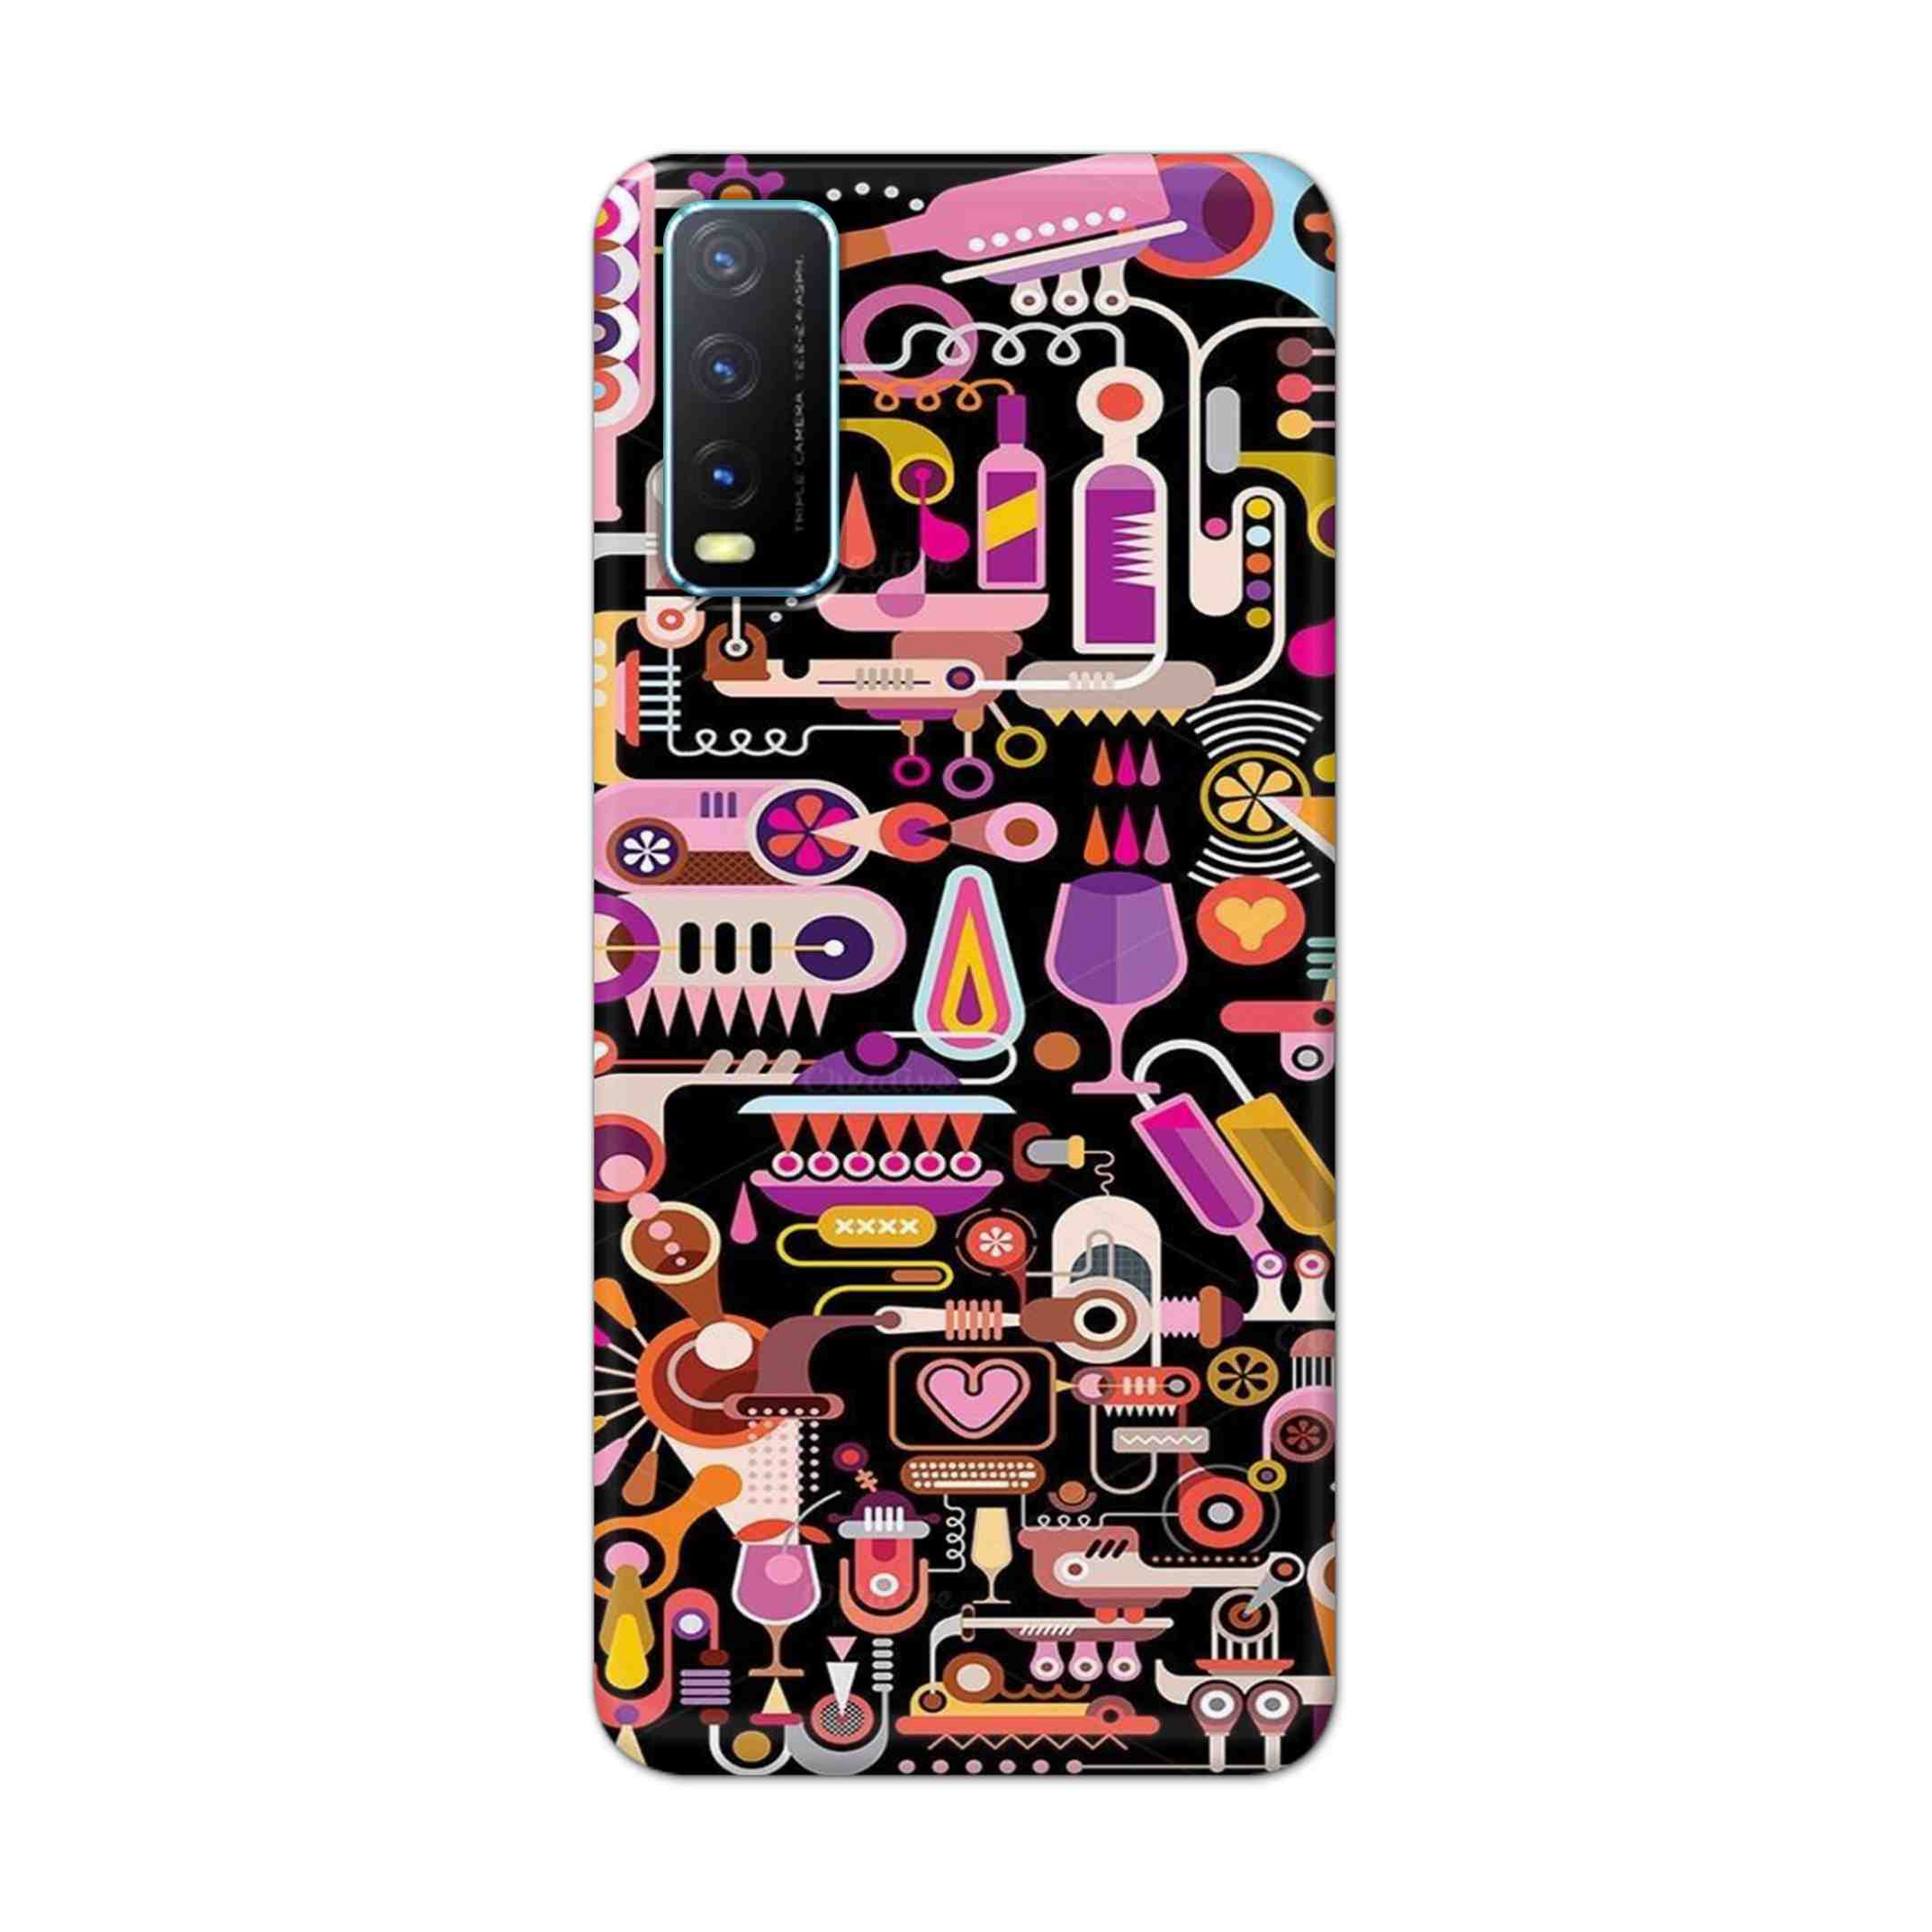 Buy Lab Art Hard Back Mobile Phone Case Cover For Vivo Y20 Online